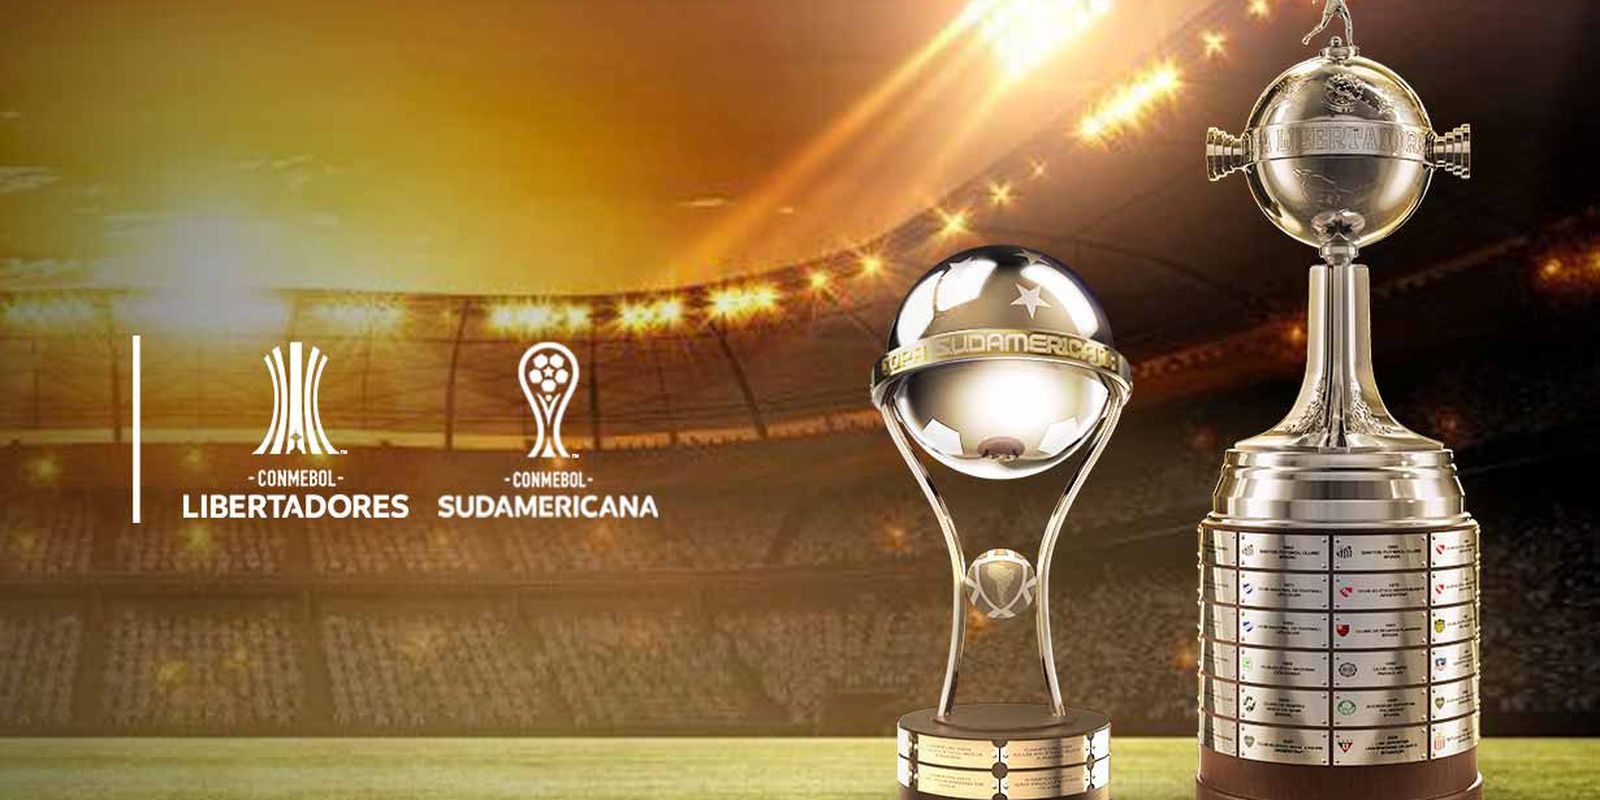 Libertadores: Conmebol define datas e horários dos jogos - Ecos da Noticia